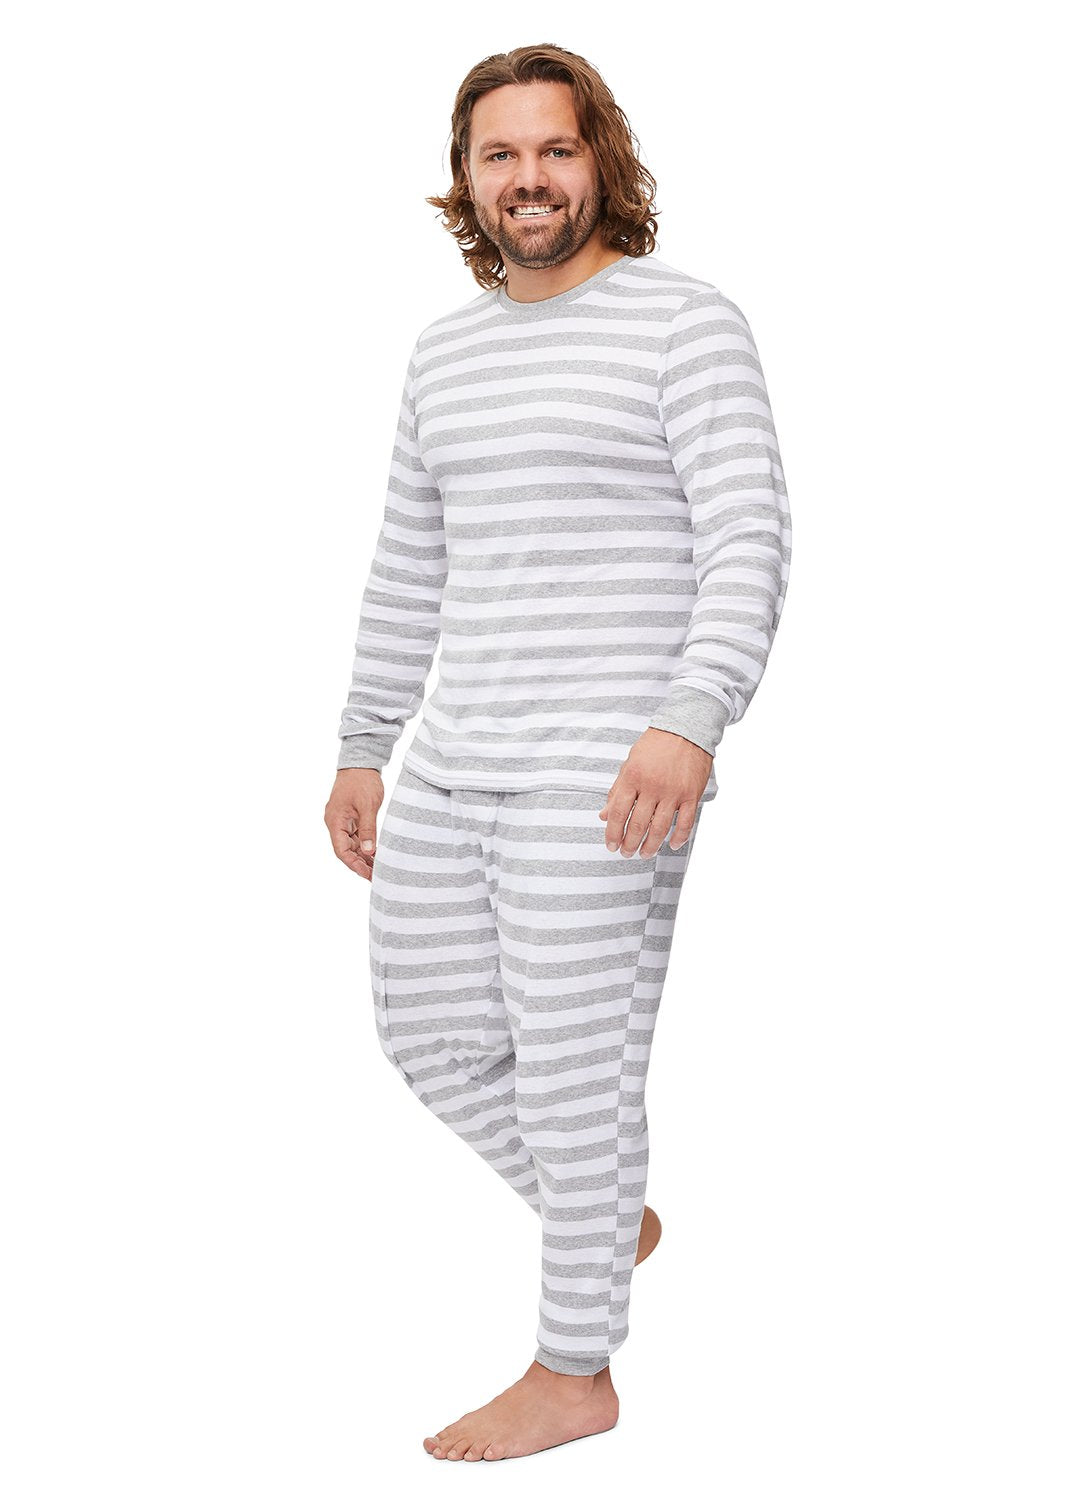 Man smiling & wearing Grey Striped Sleepwear Pajama Set